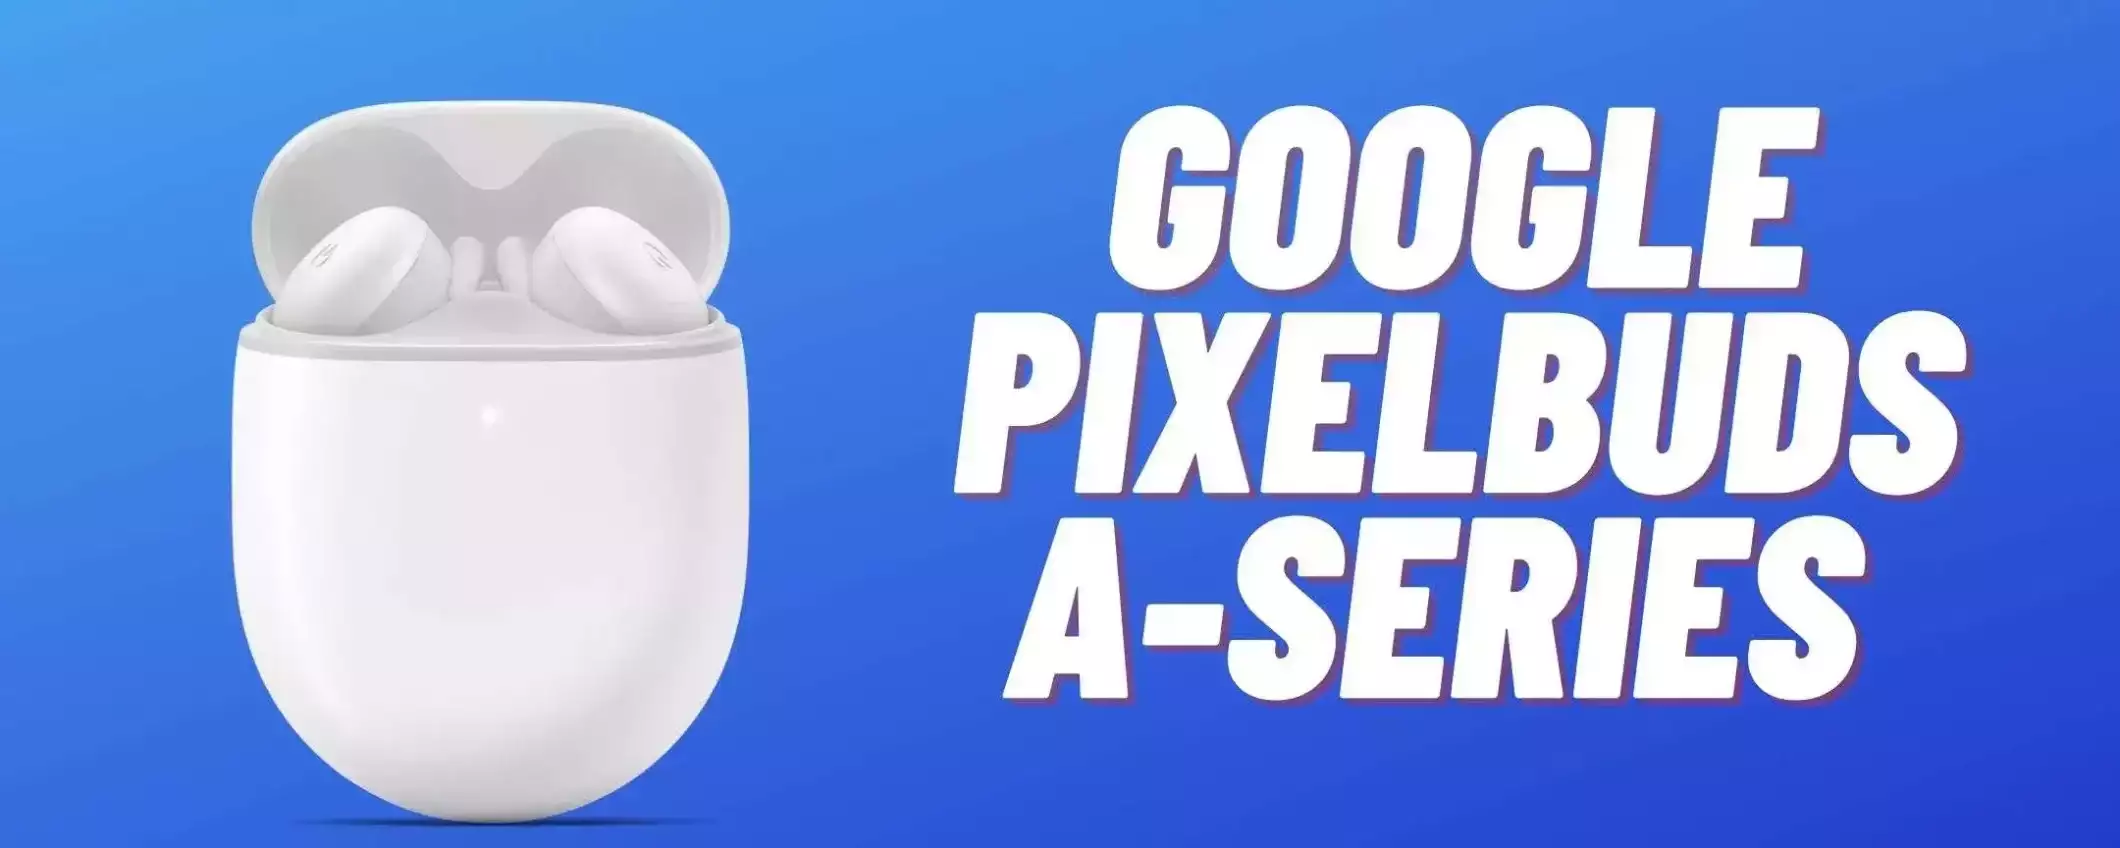 Google Pixel Buds A-Series a meno di 90€ su Amazon